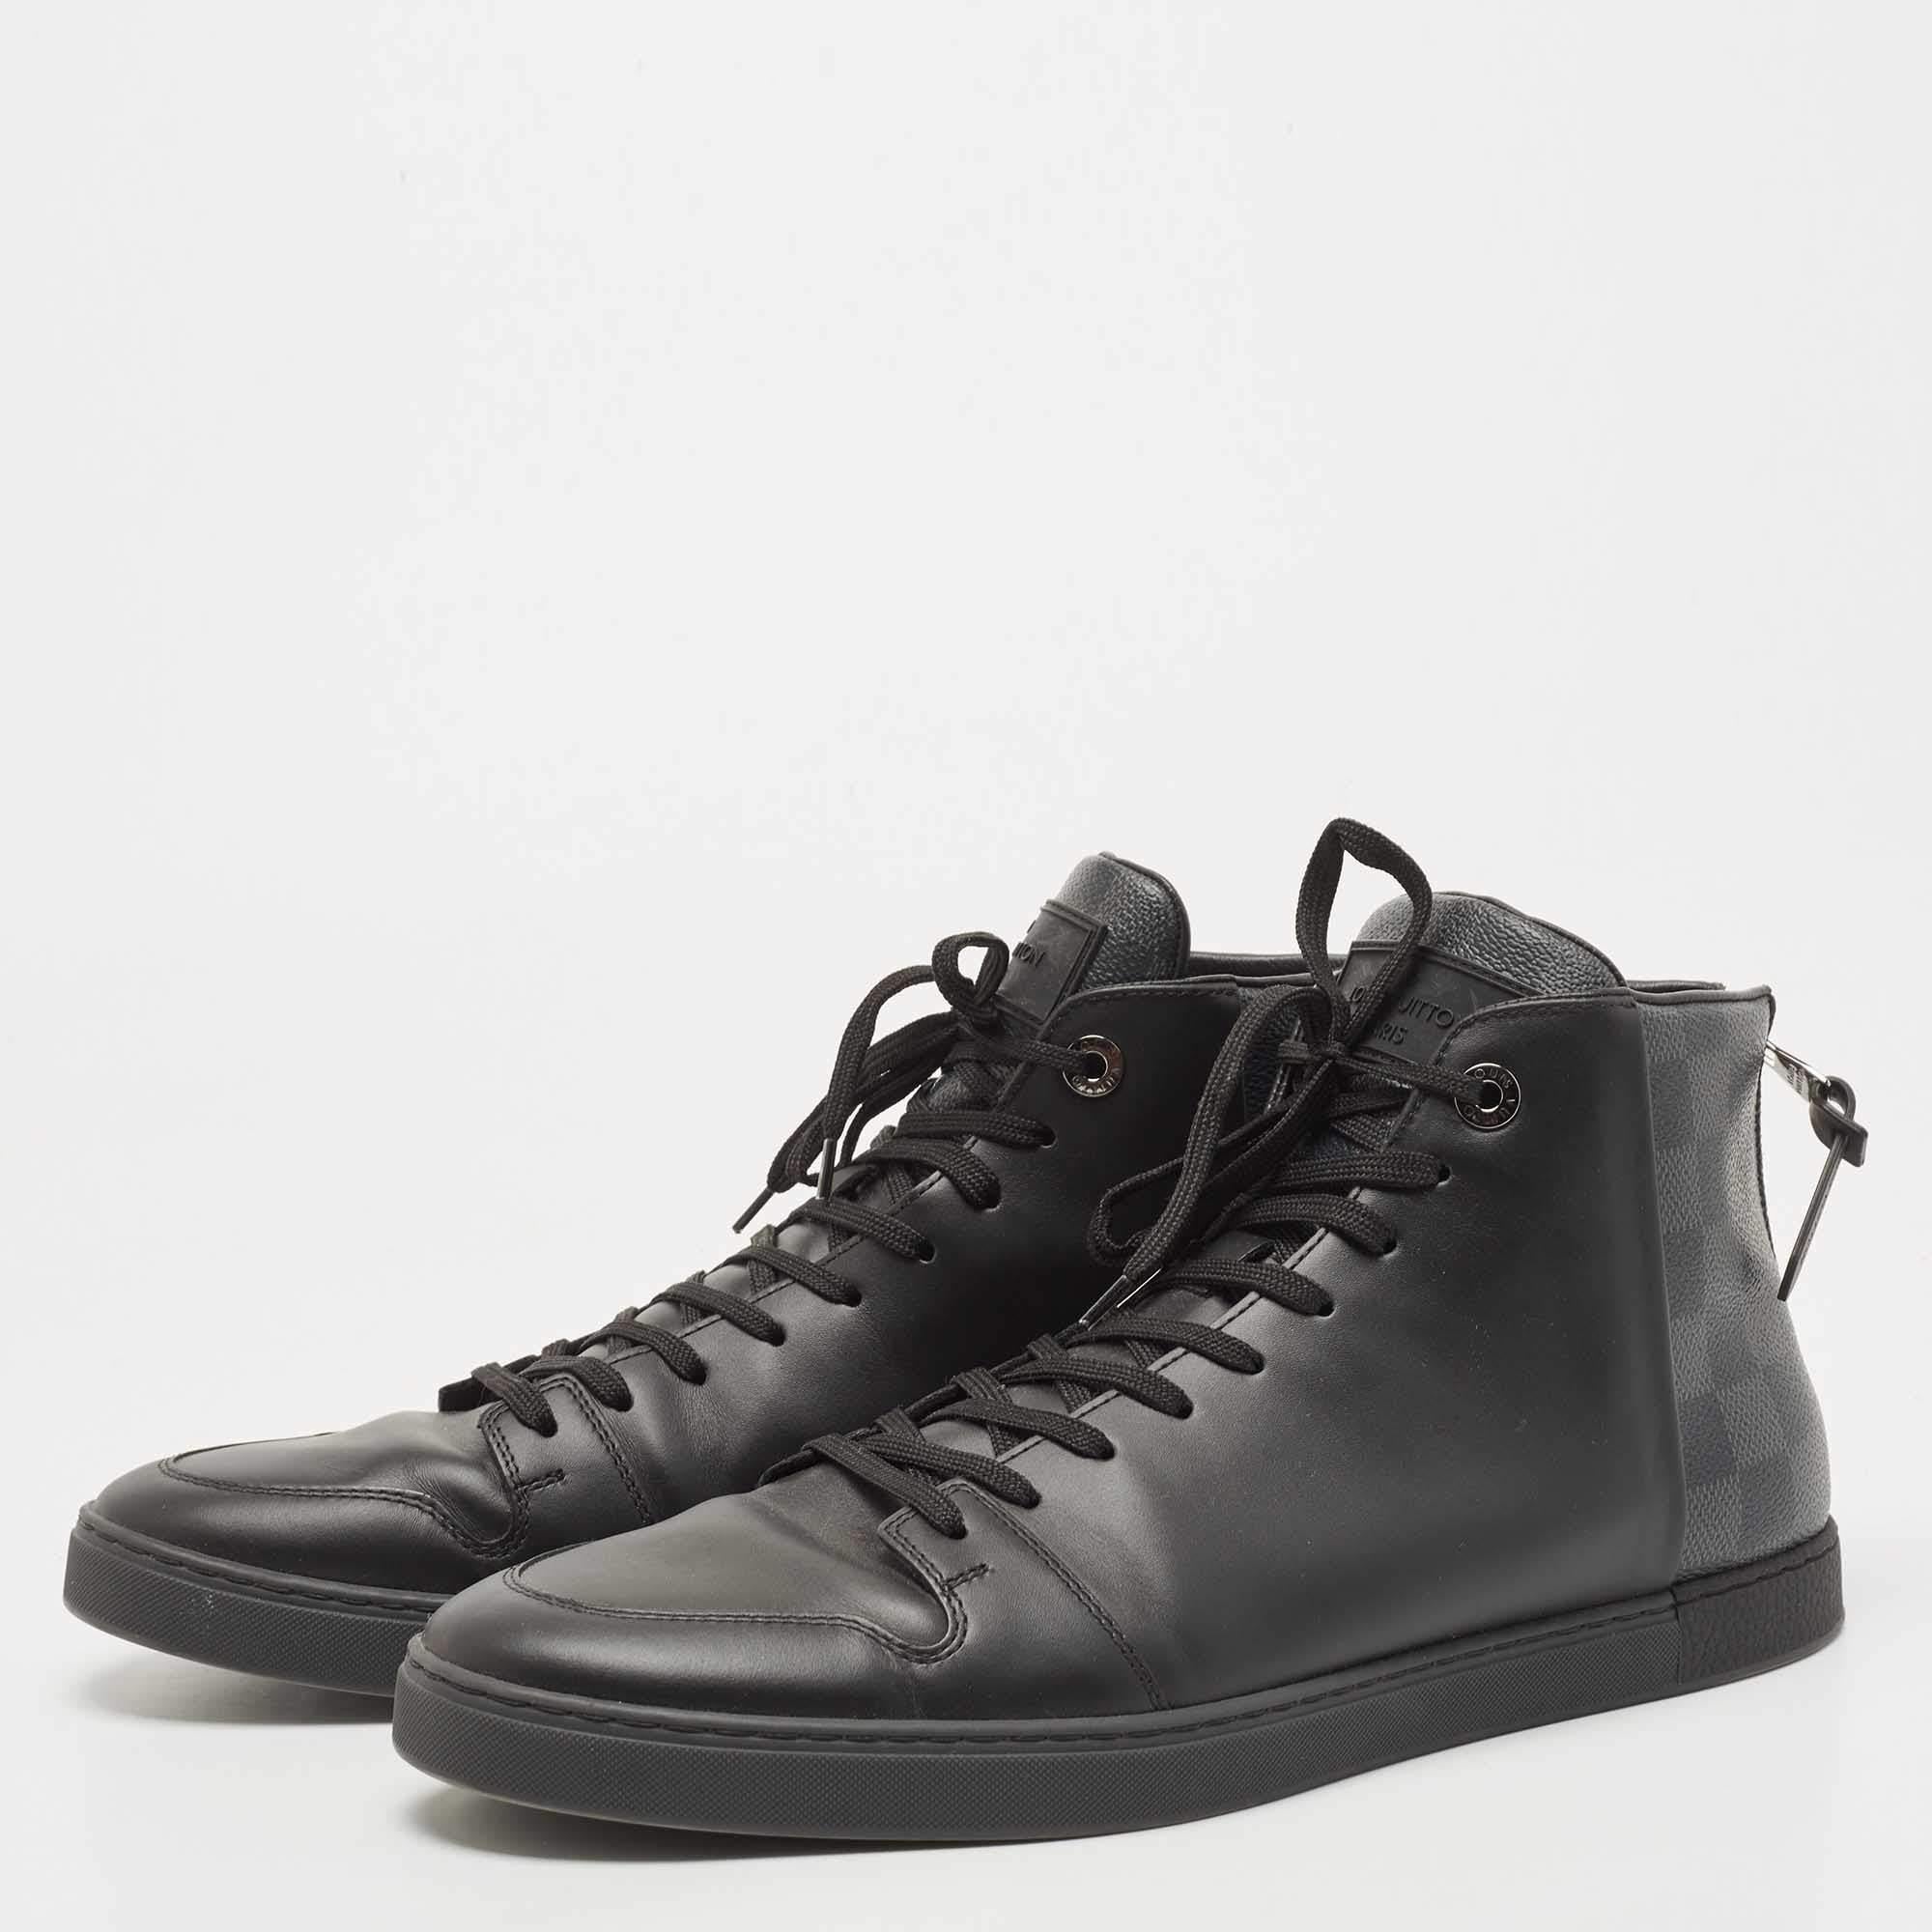 Men's Louis Vuitton Black Leather Damier Graphite Canvas Line Up Sneakers Size 42.5